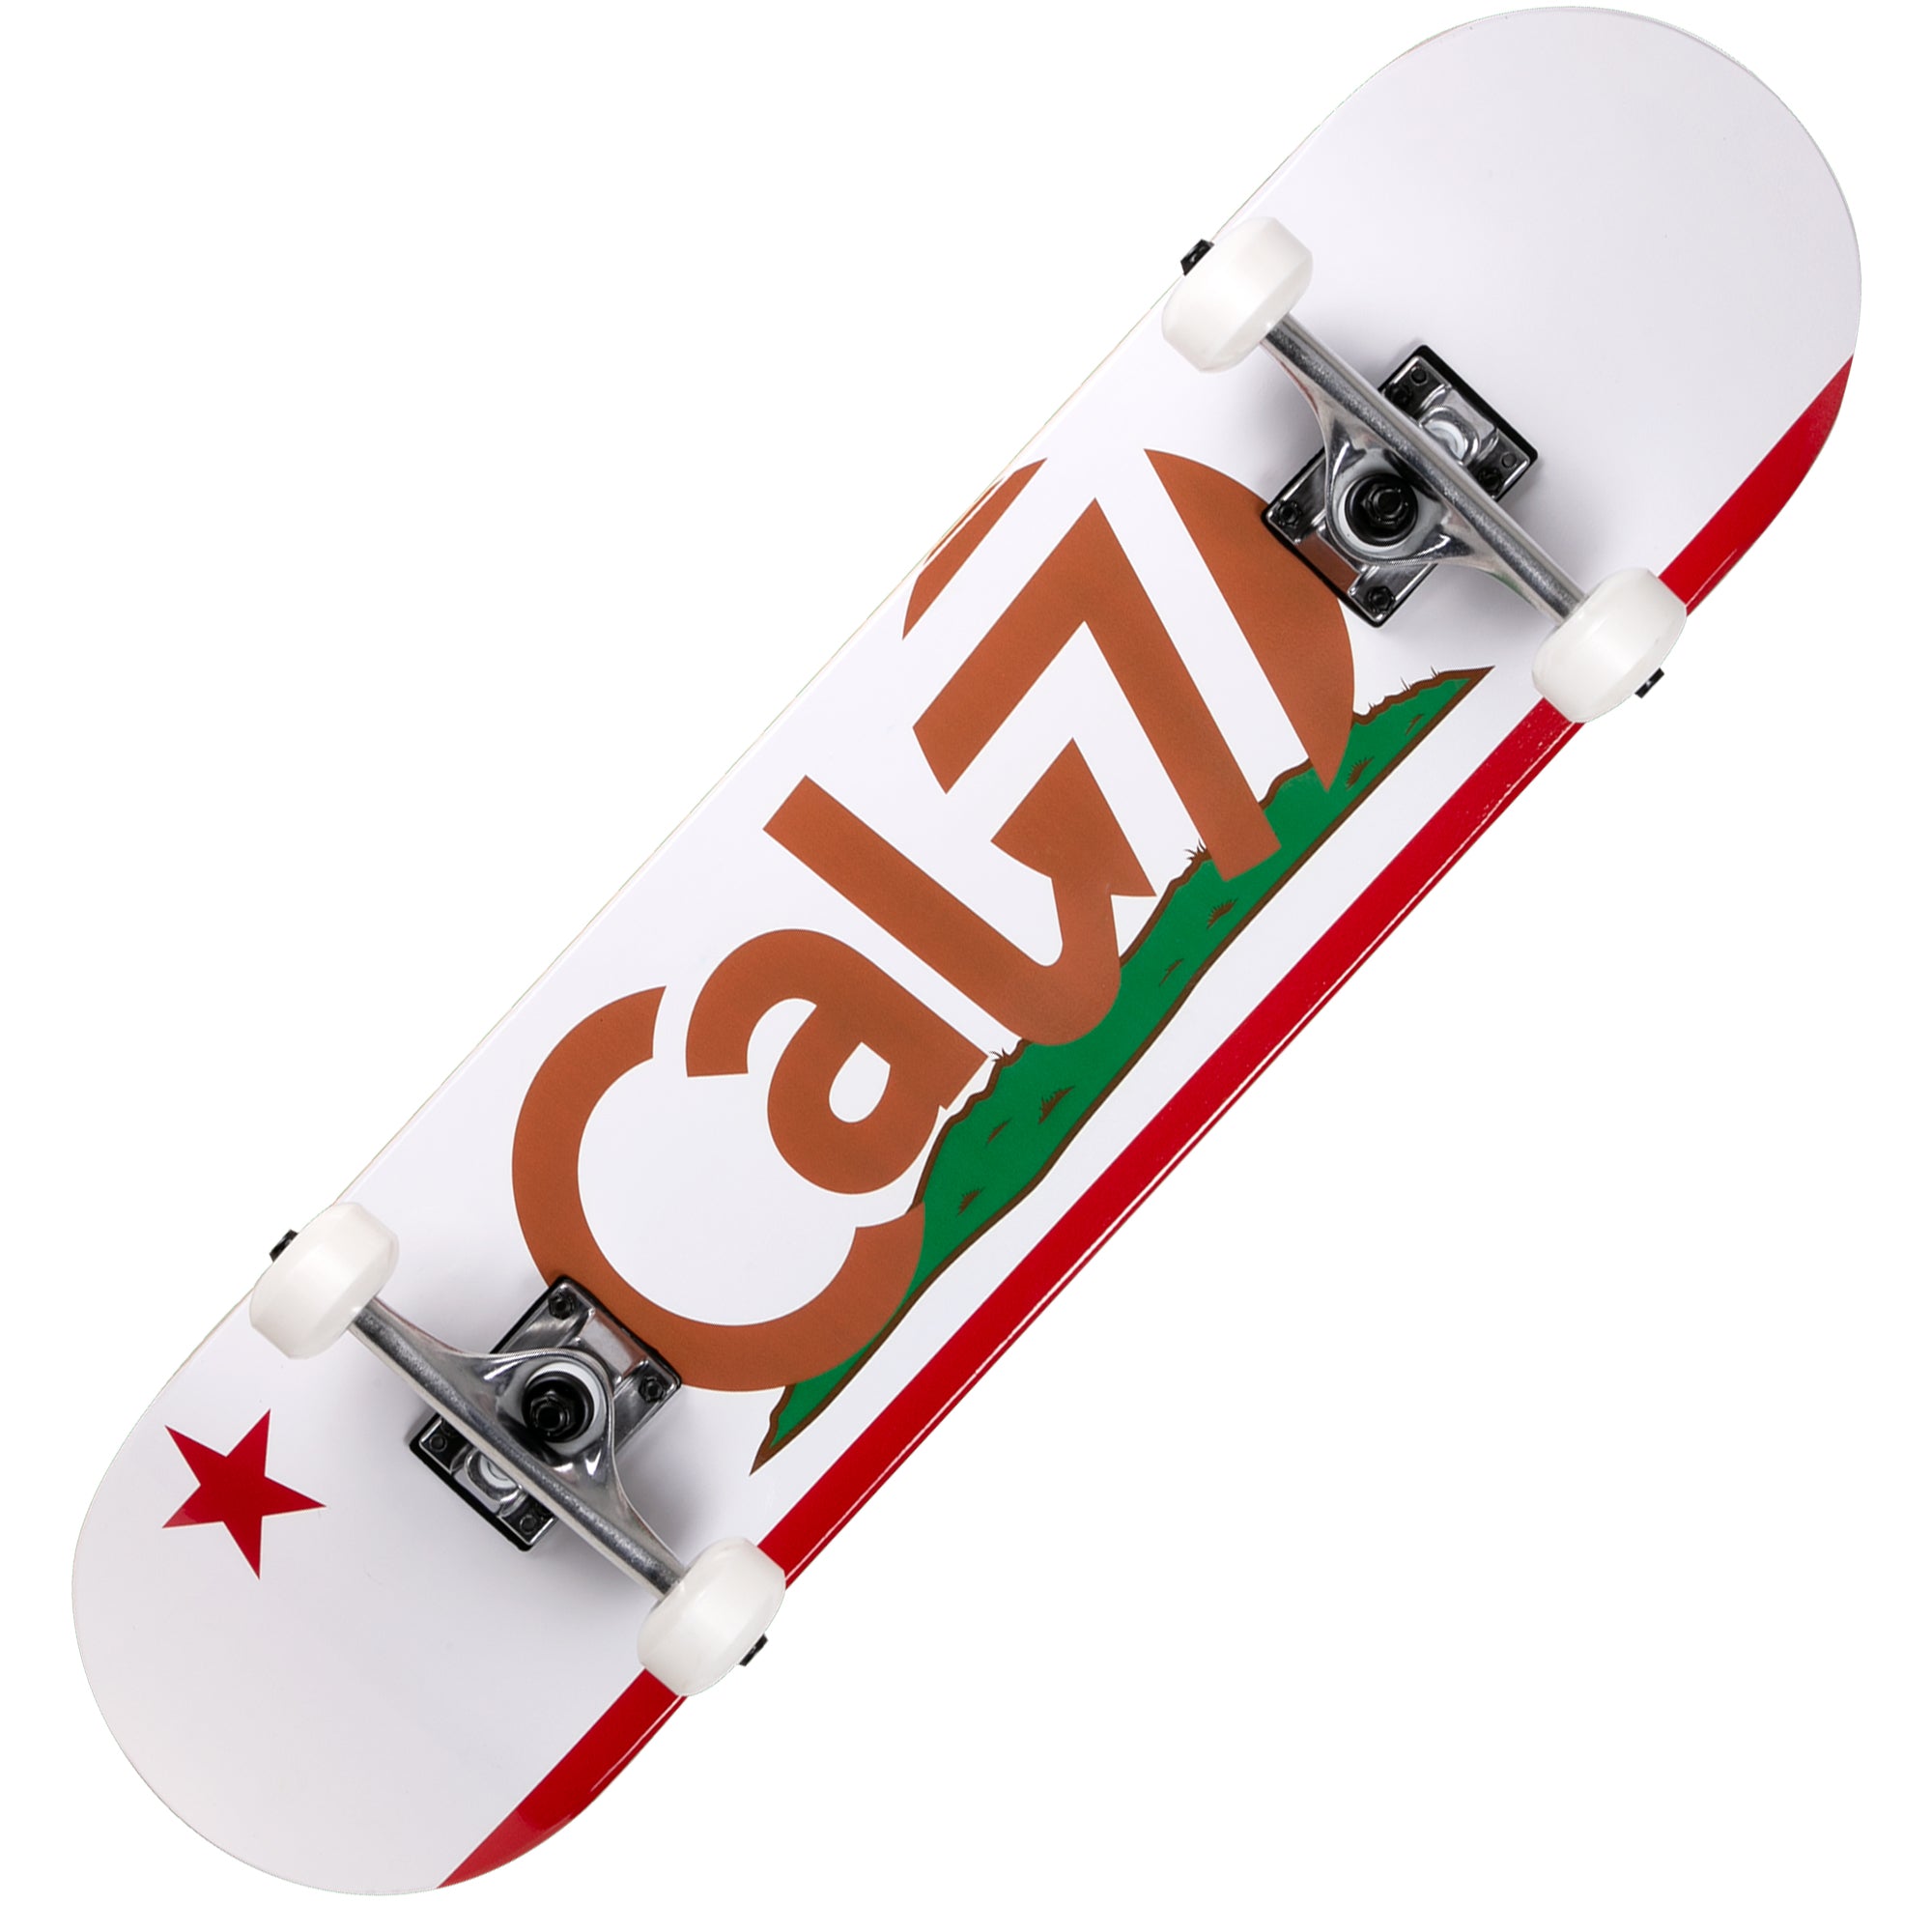 CALIFORNIA STREET スケートボード 8インチ - その他スポーツ